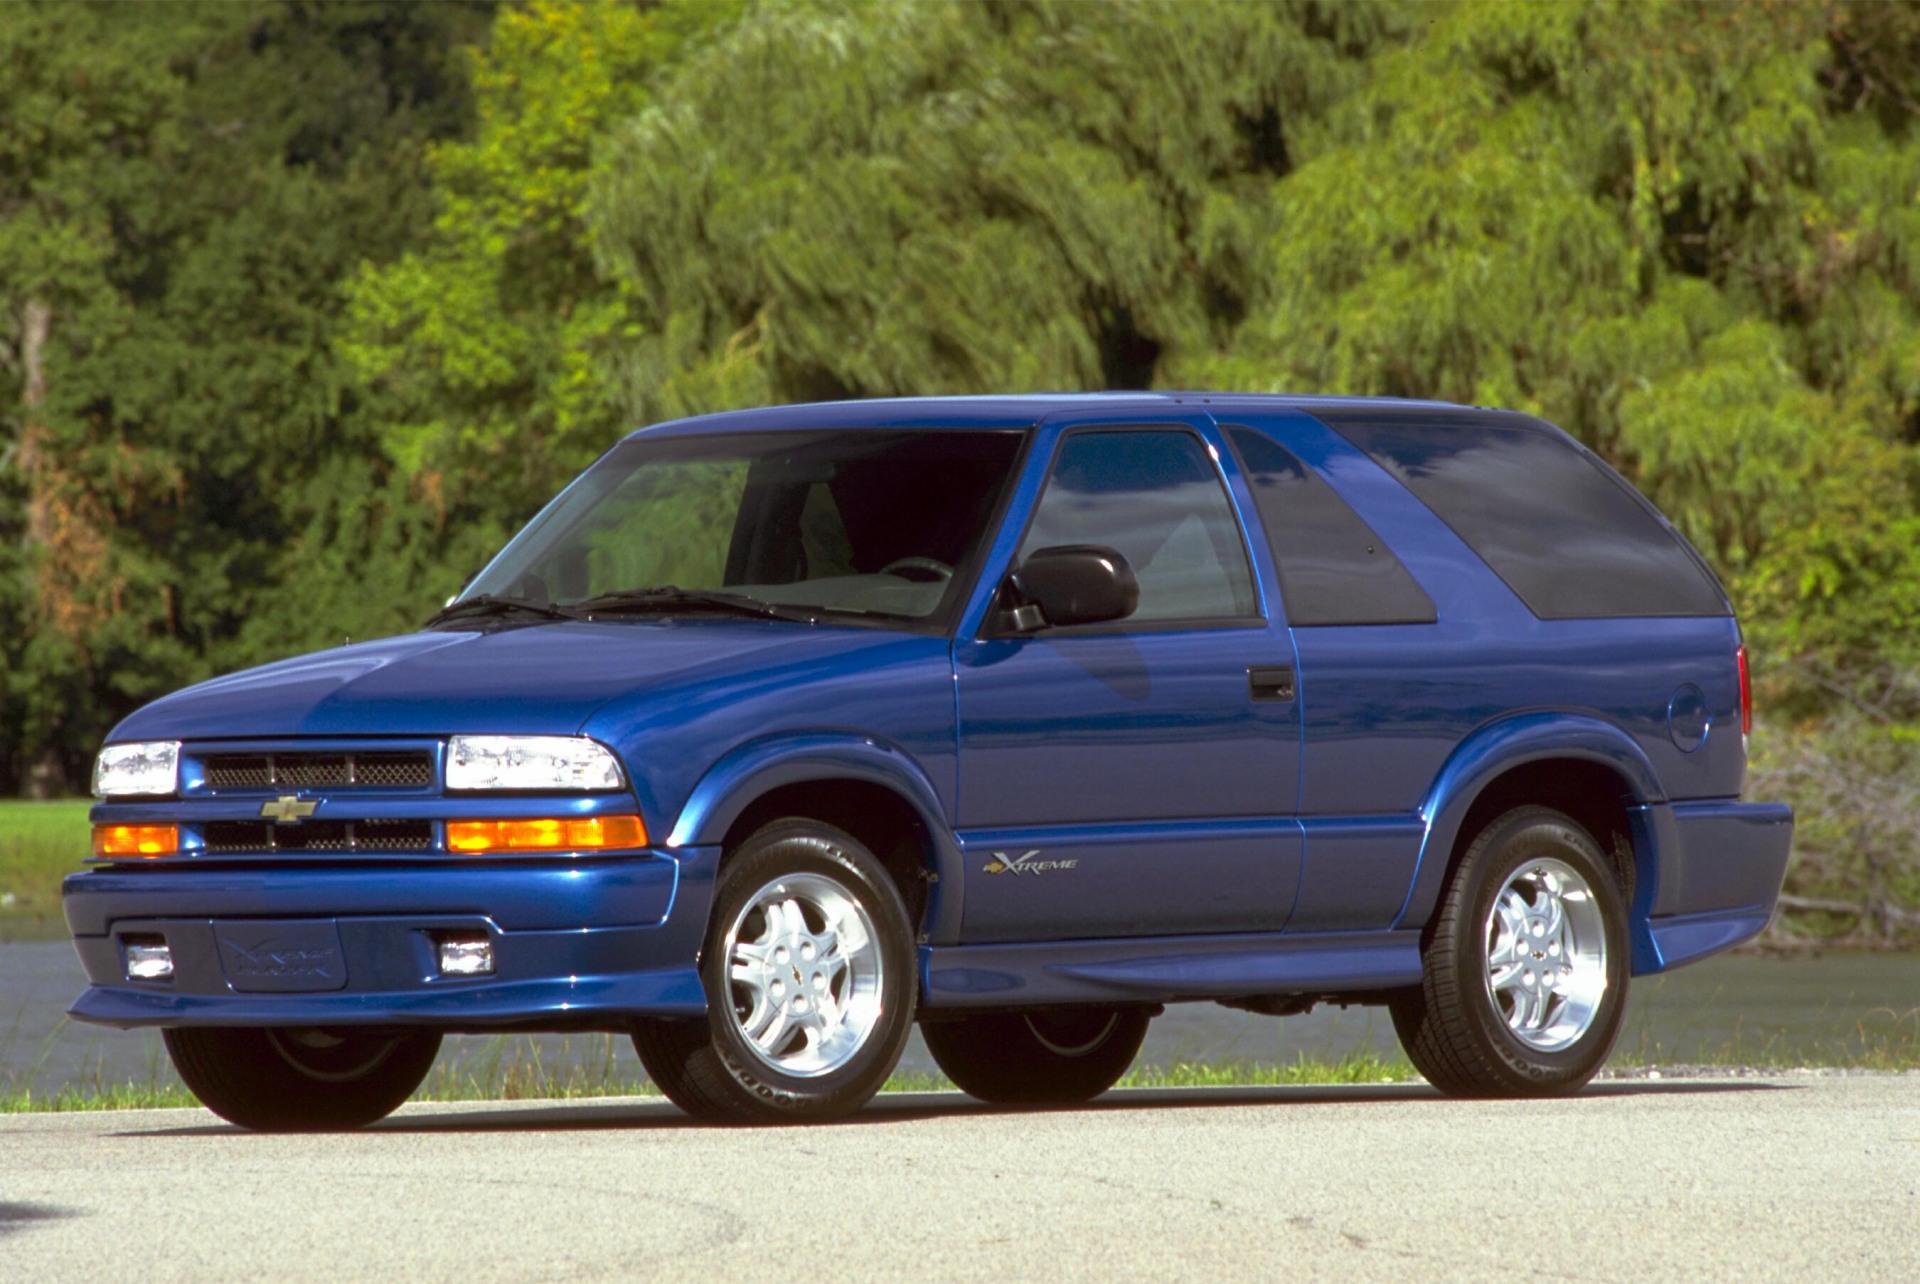 2001-Chevrolet-Blazer-SUV_Image-08.jpg